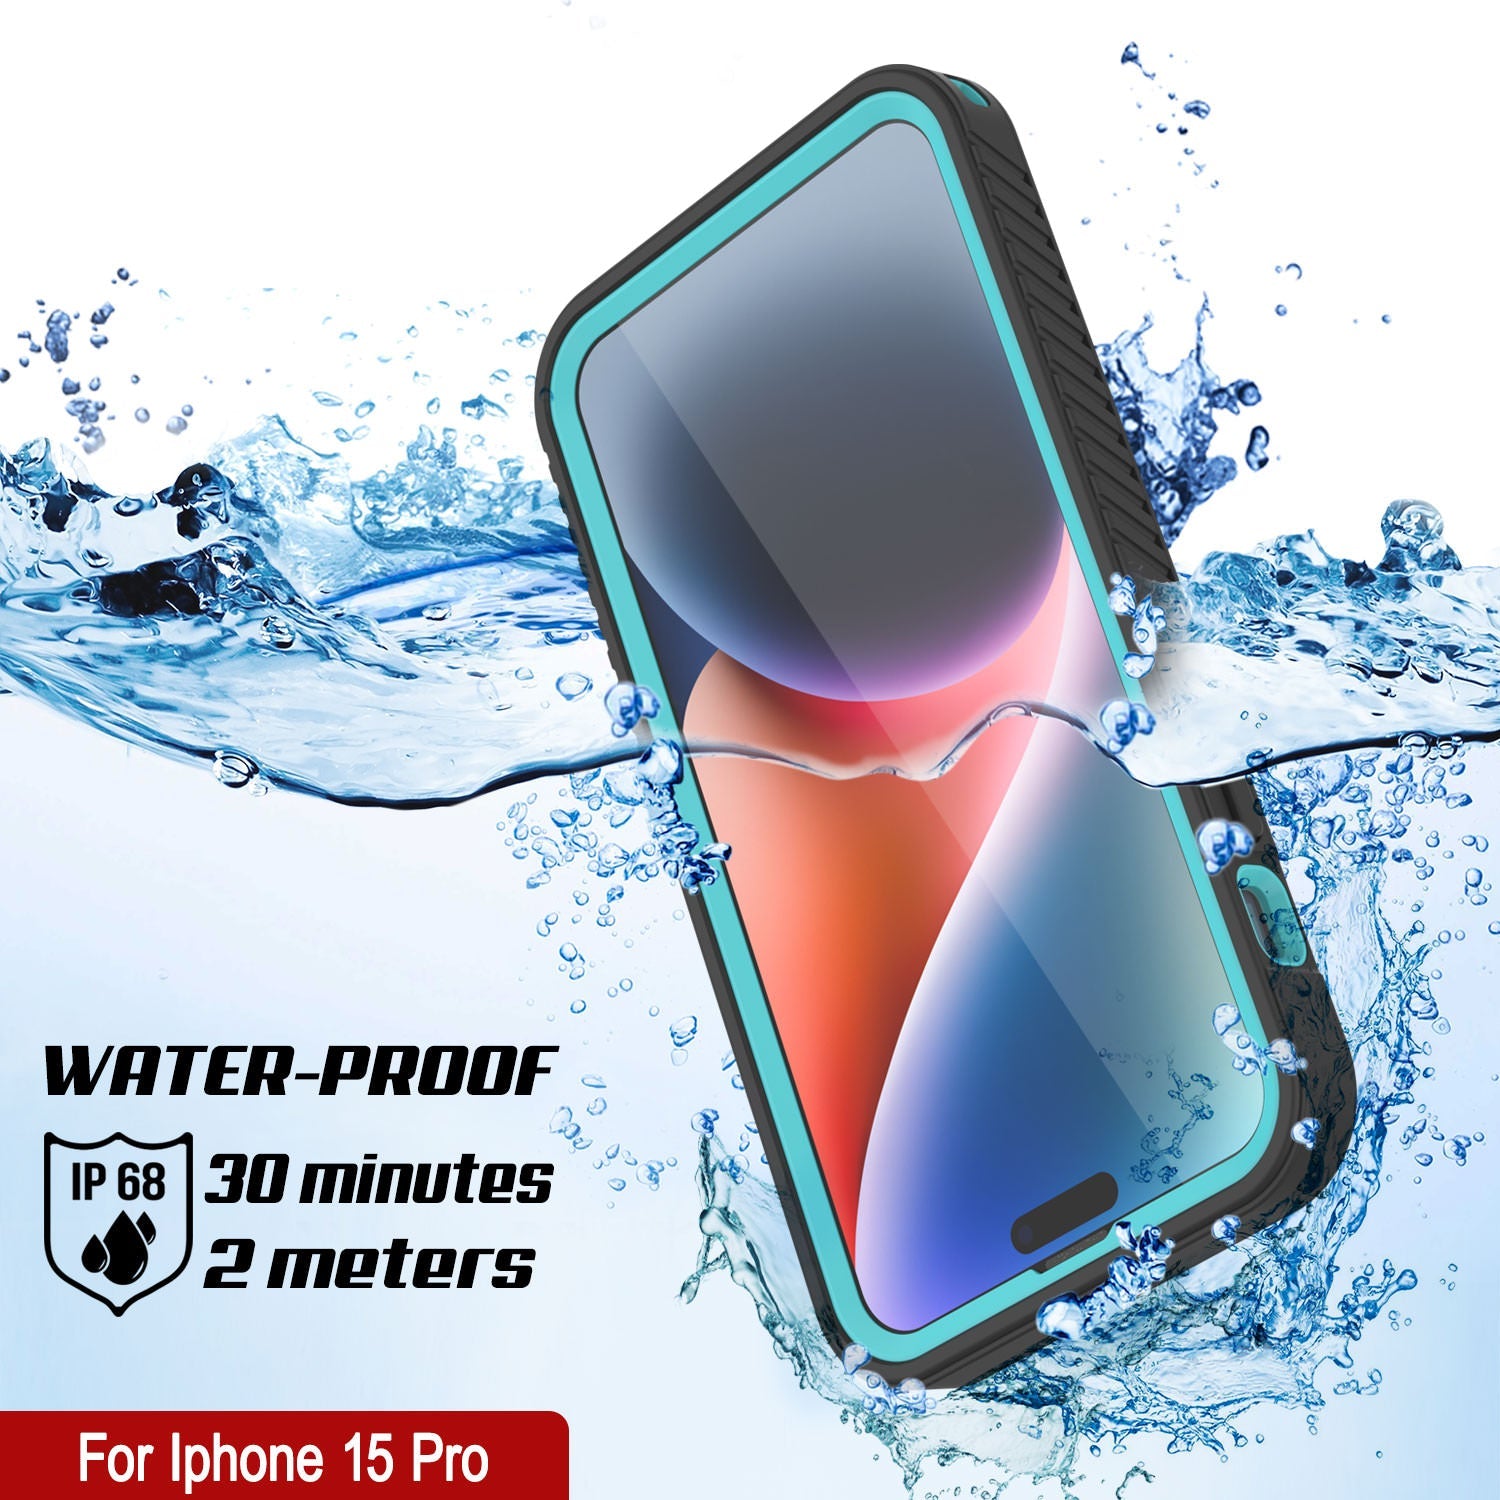 iPhone 15 Pro Waterproof IP68 Case, Punkcase [Teal] [StudStar Series] [Slim Fit]